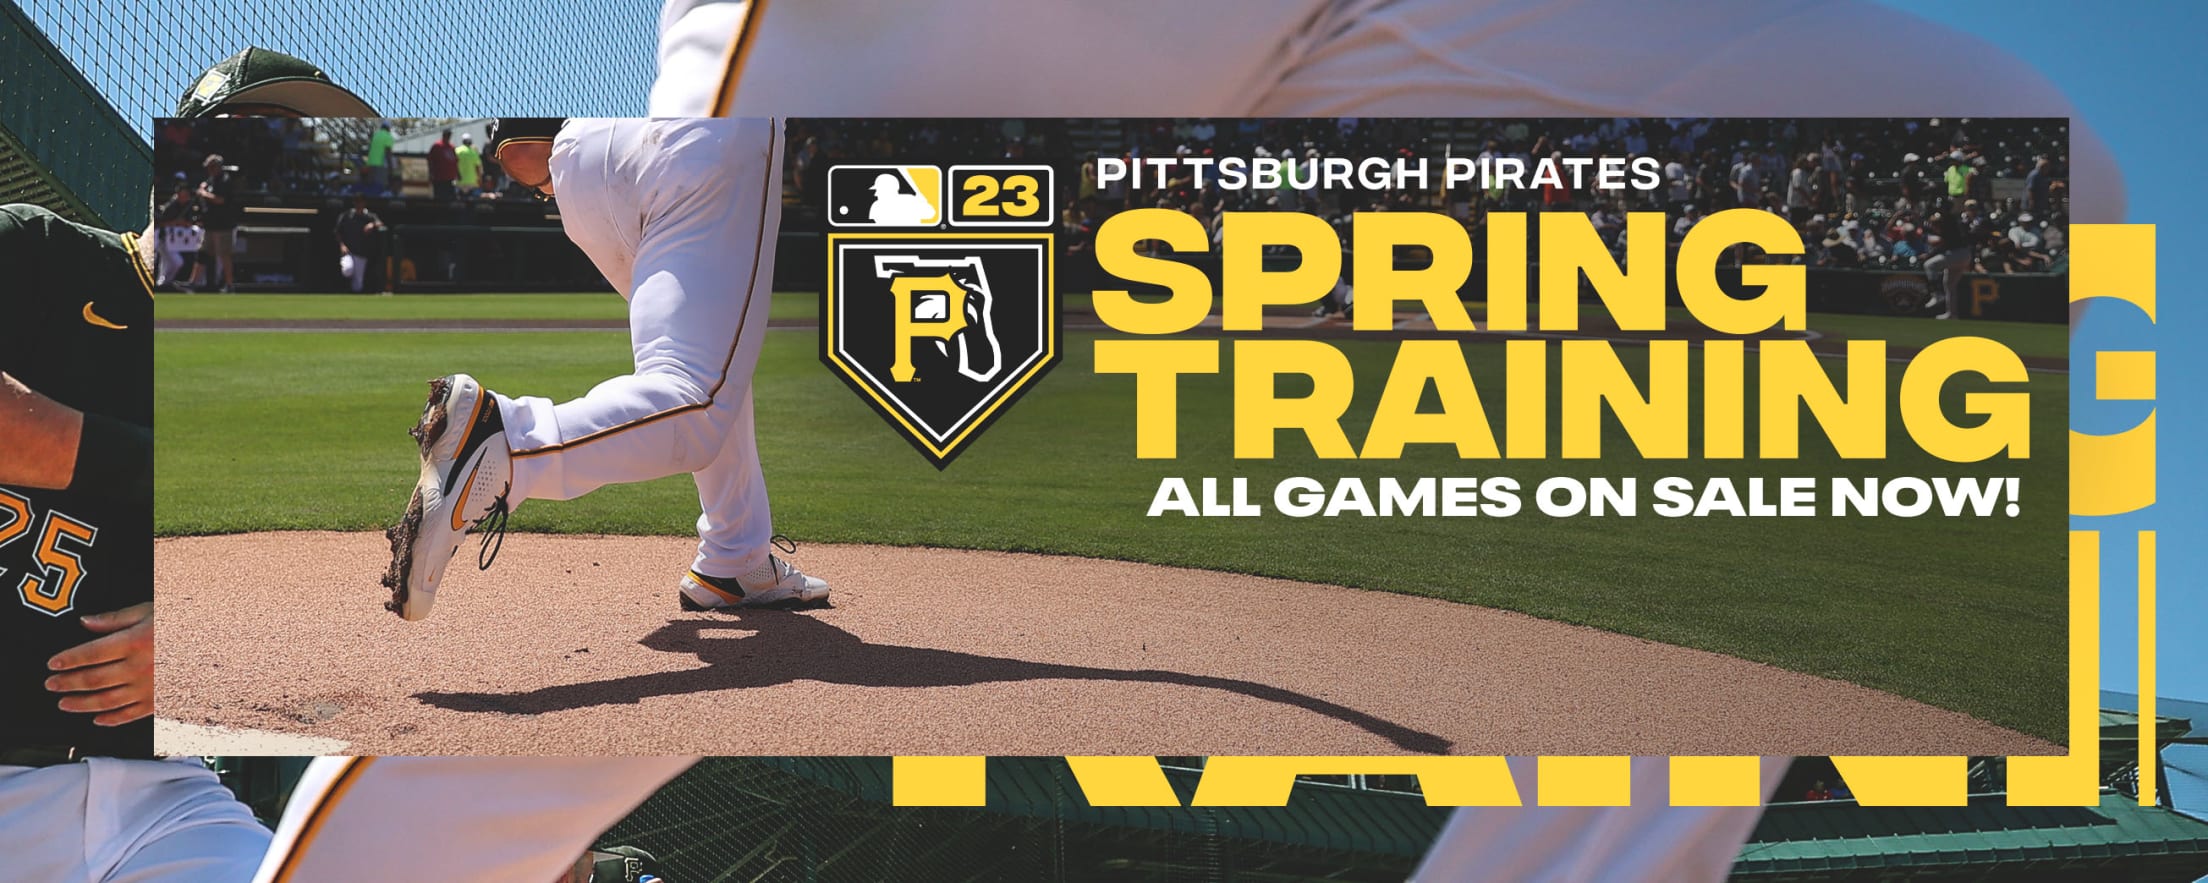 Pirates Spring Training Pittsburgh Pirates